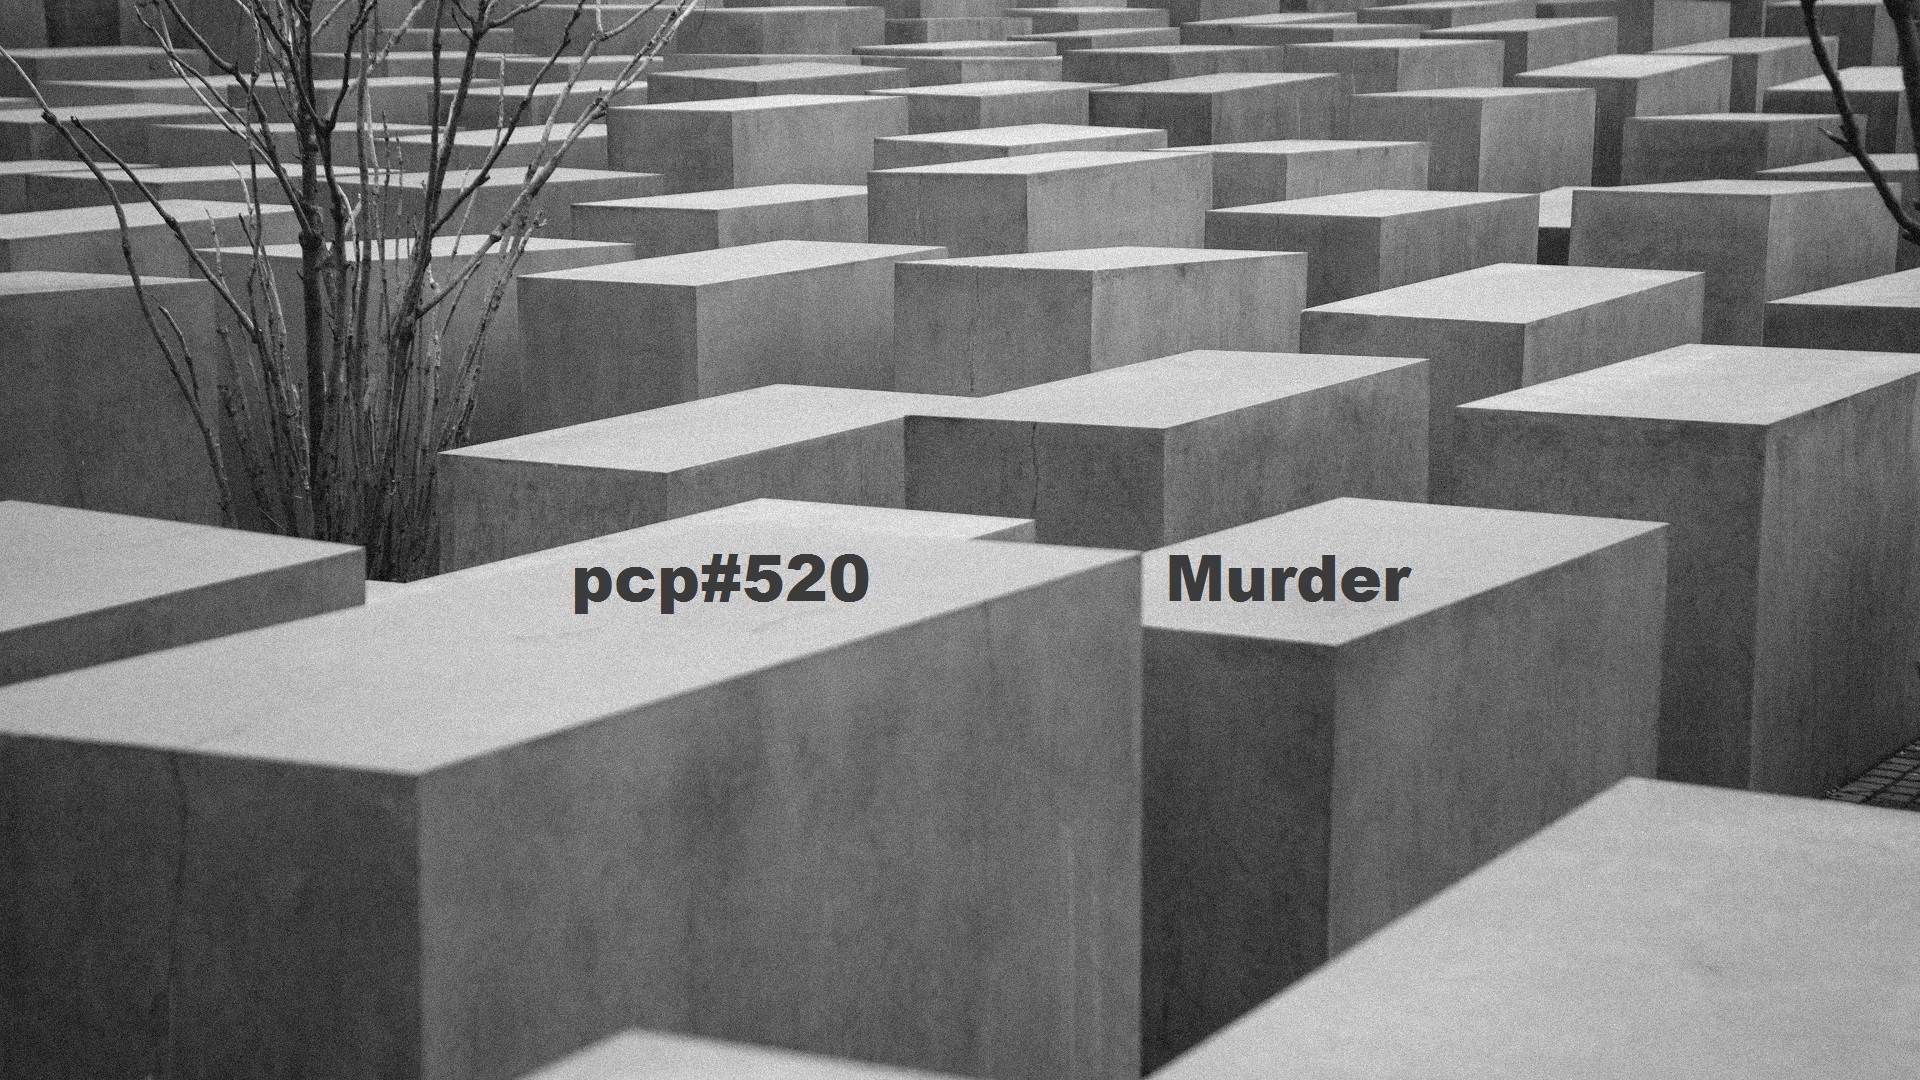 PCP#520... Murder...